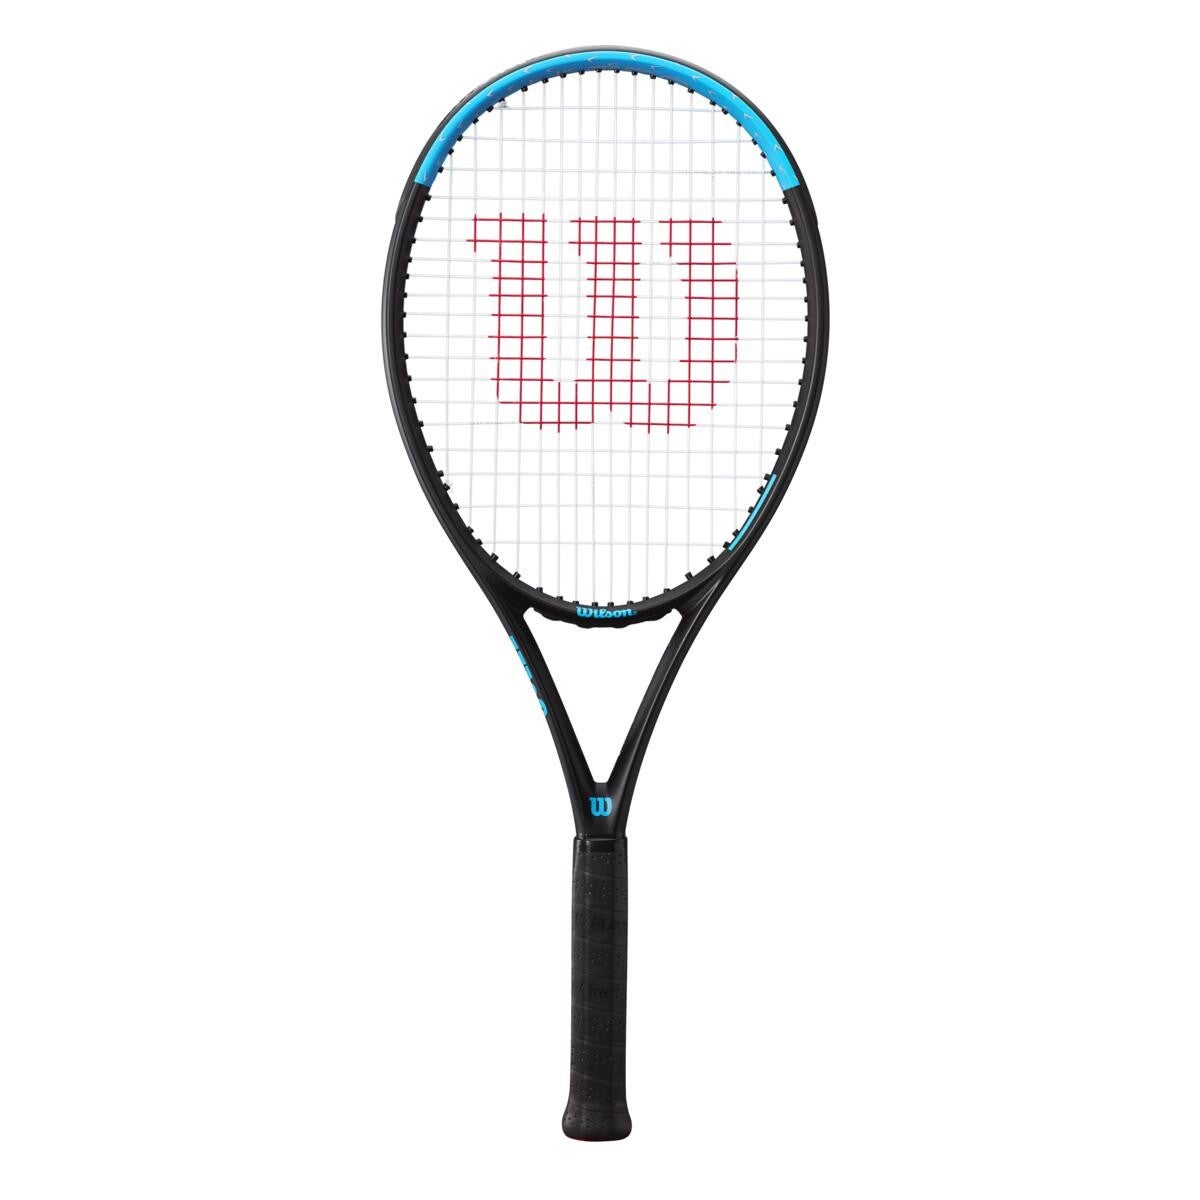 Ultra Power 105 Strung Tennis Racket